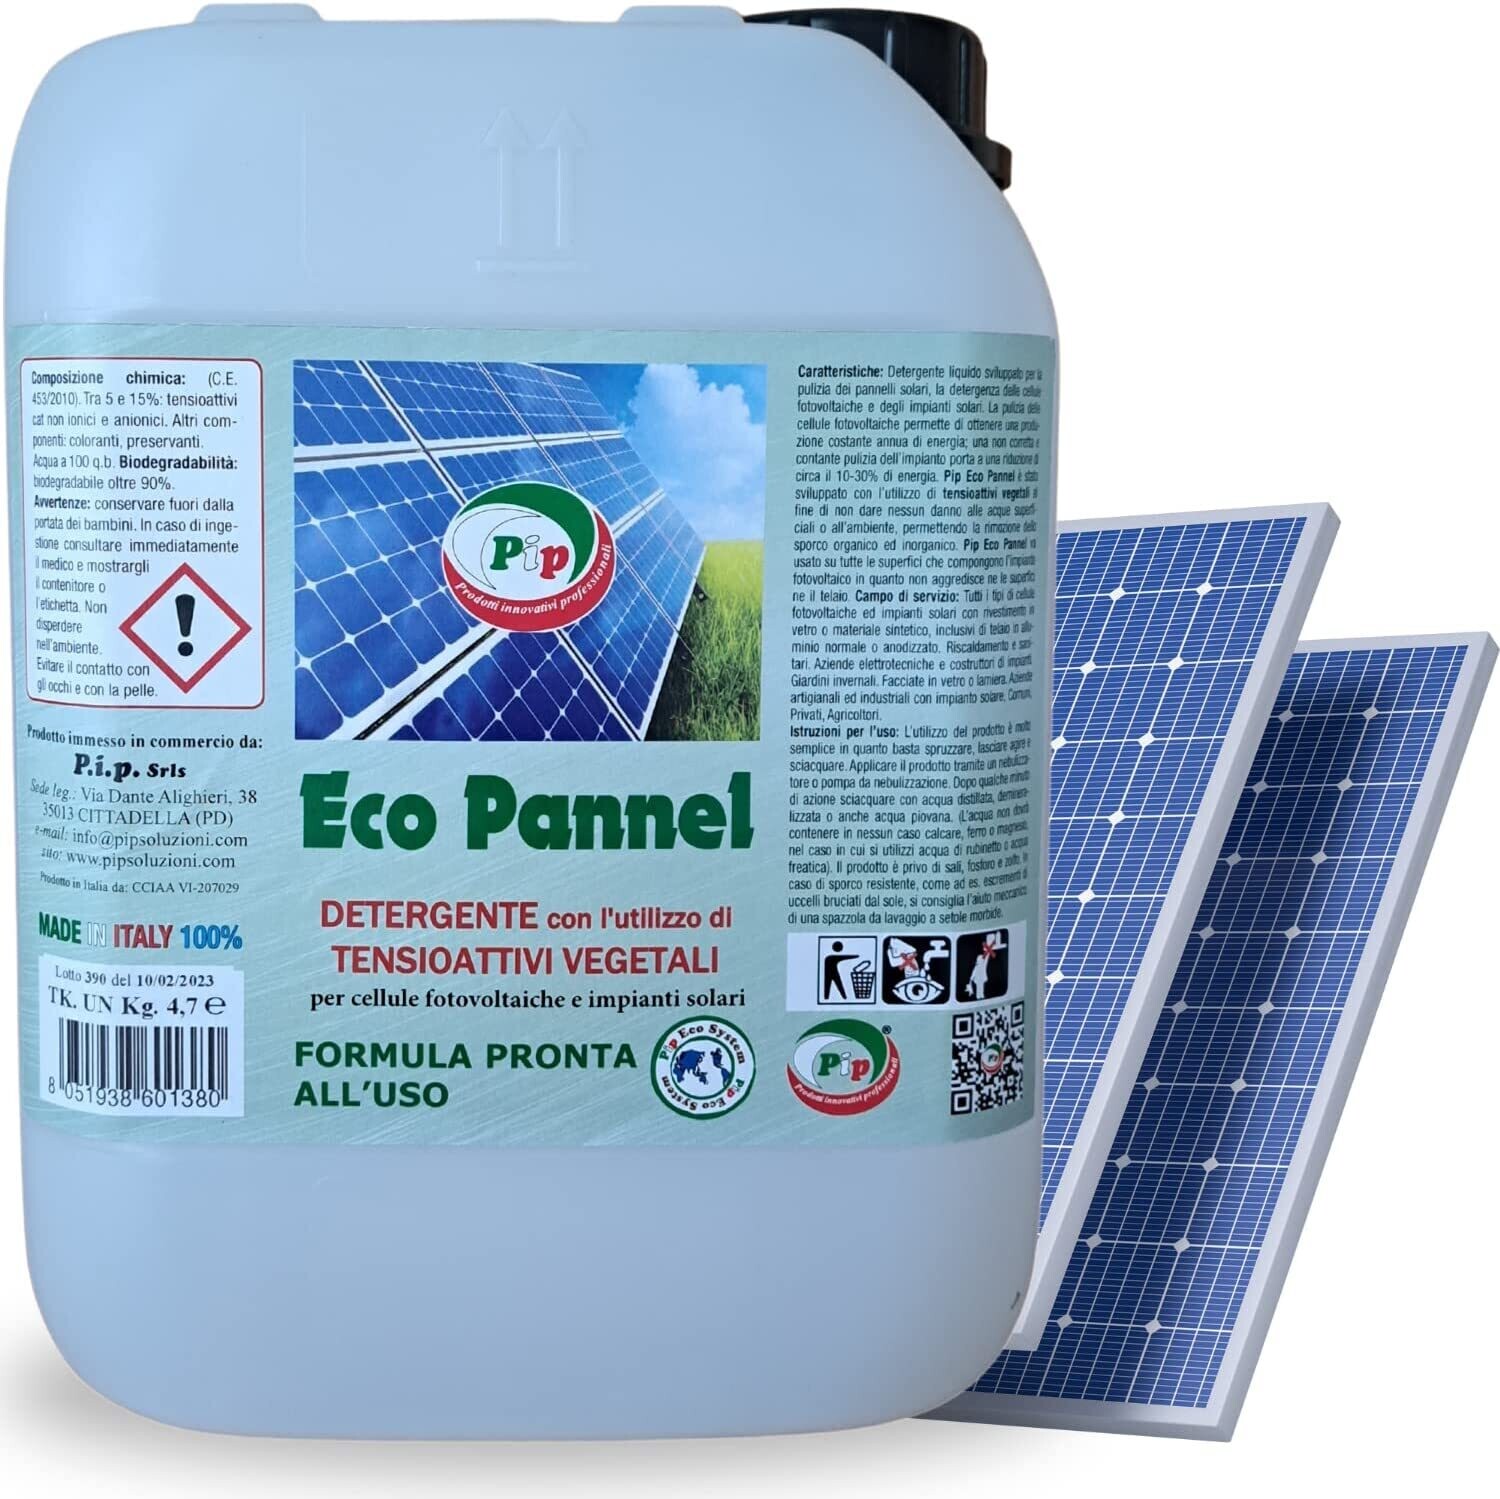 PIP Eco Pannel, Detergente per Pannelli Fotovoltaici Pronto all'Uso, Pulizia Professionale del Pannello Solare, Vegetale ed Ecologico, Tanica da 4.7 Kg per 50 Mq